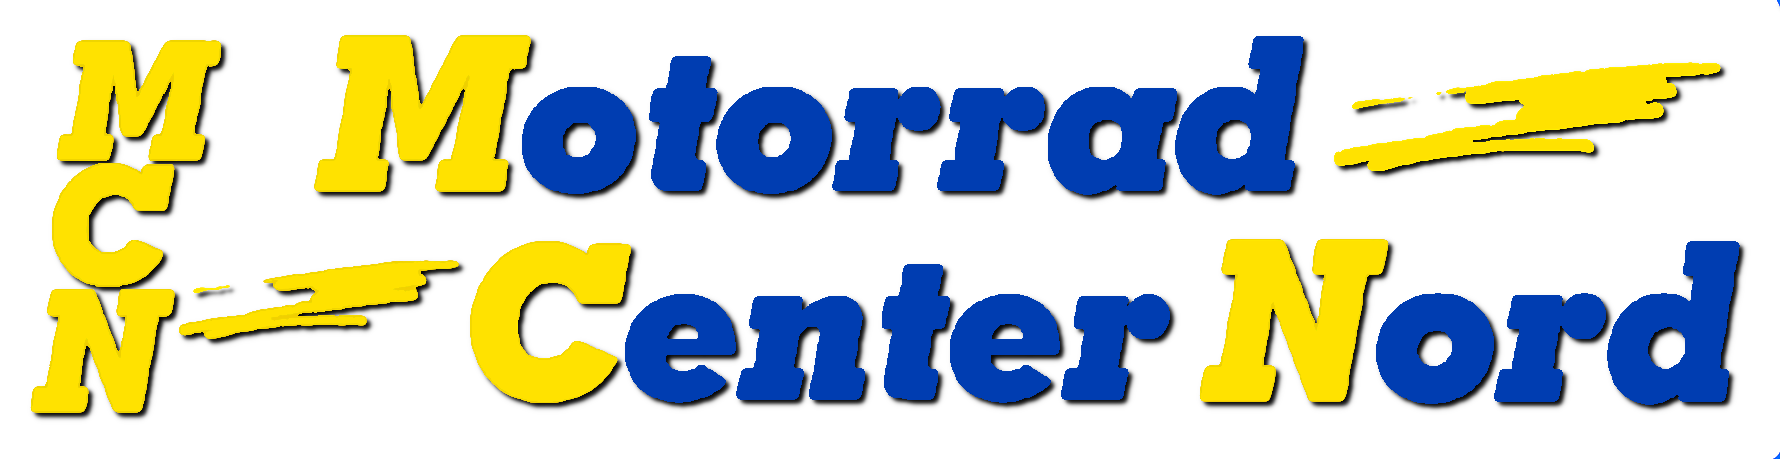 Motorrad Center Nord Logo